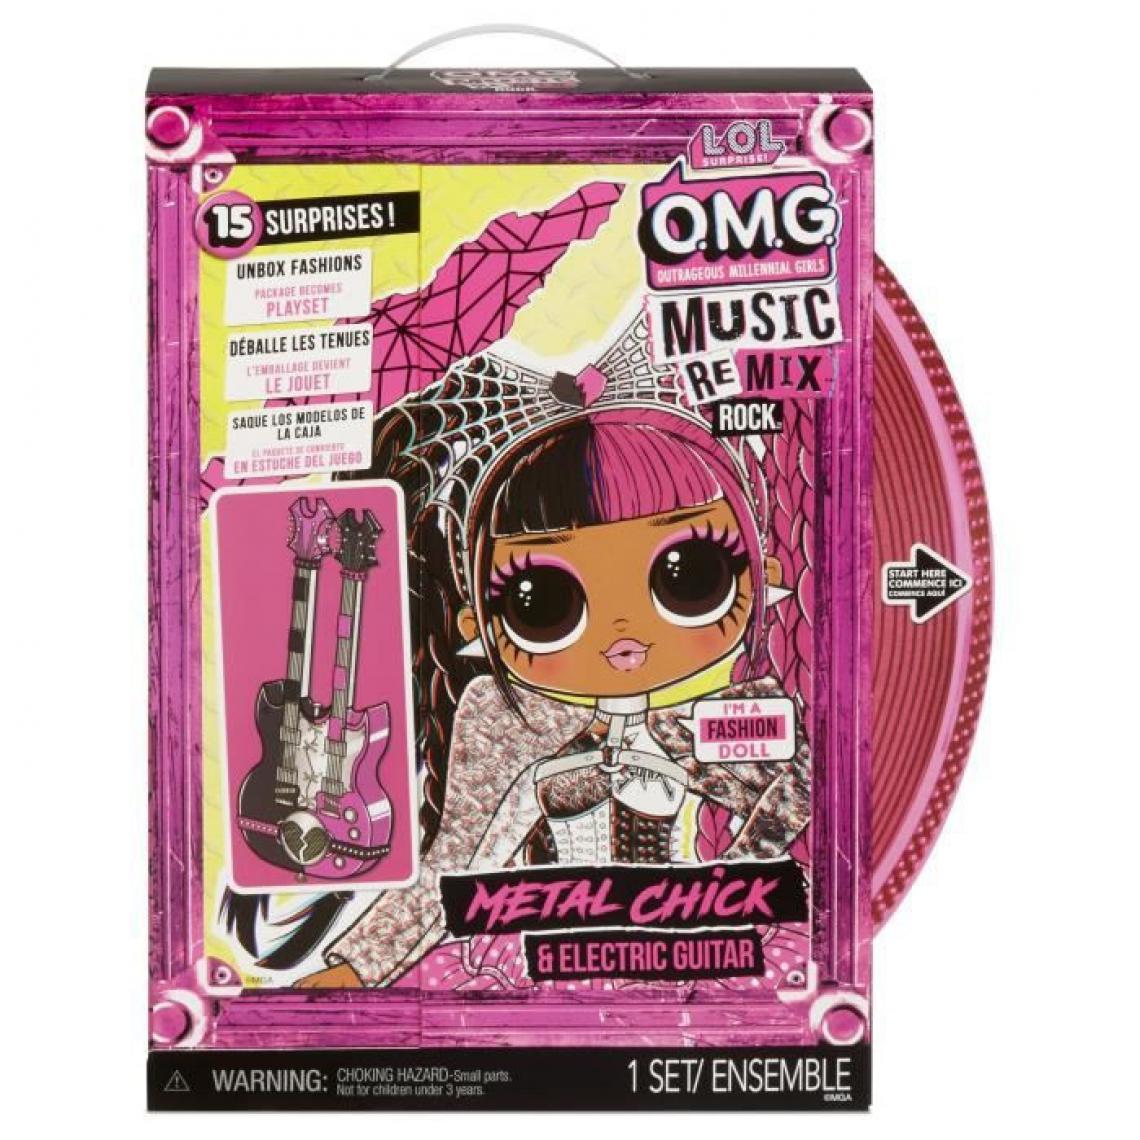 Lol Surprise - L.O.L. Surprise Poupee OMG Remix Rock- Metal Chick and Electric Guitar - 577577EUC - Poupee mannequin 24cm - Poupées